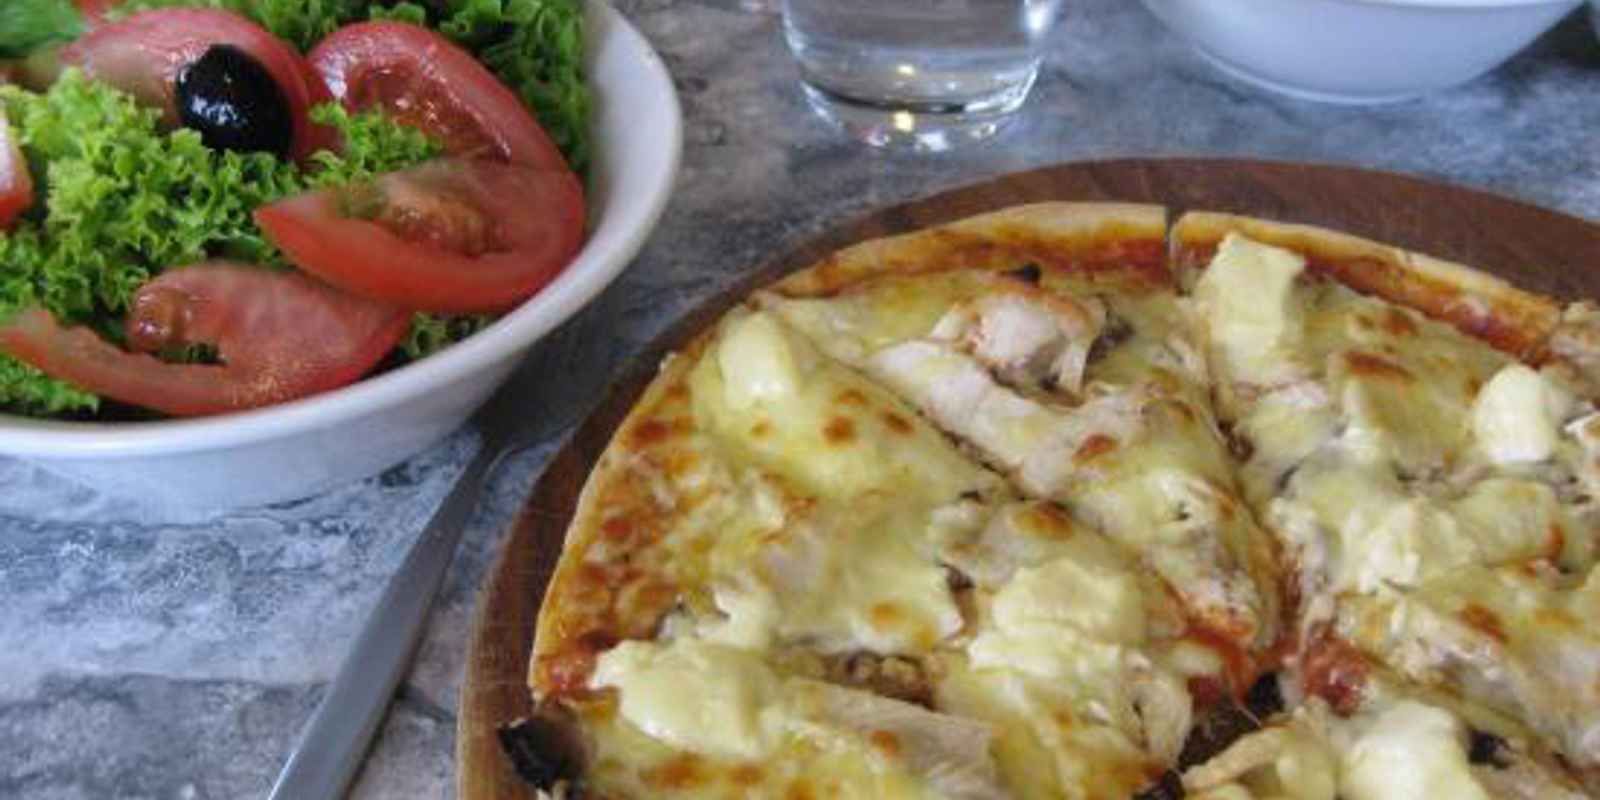 Ruffino's Pizza & Pasta